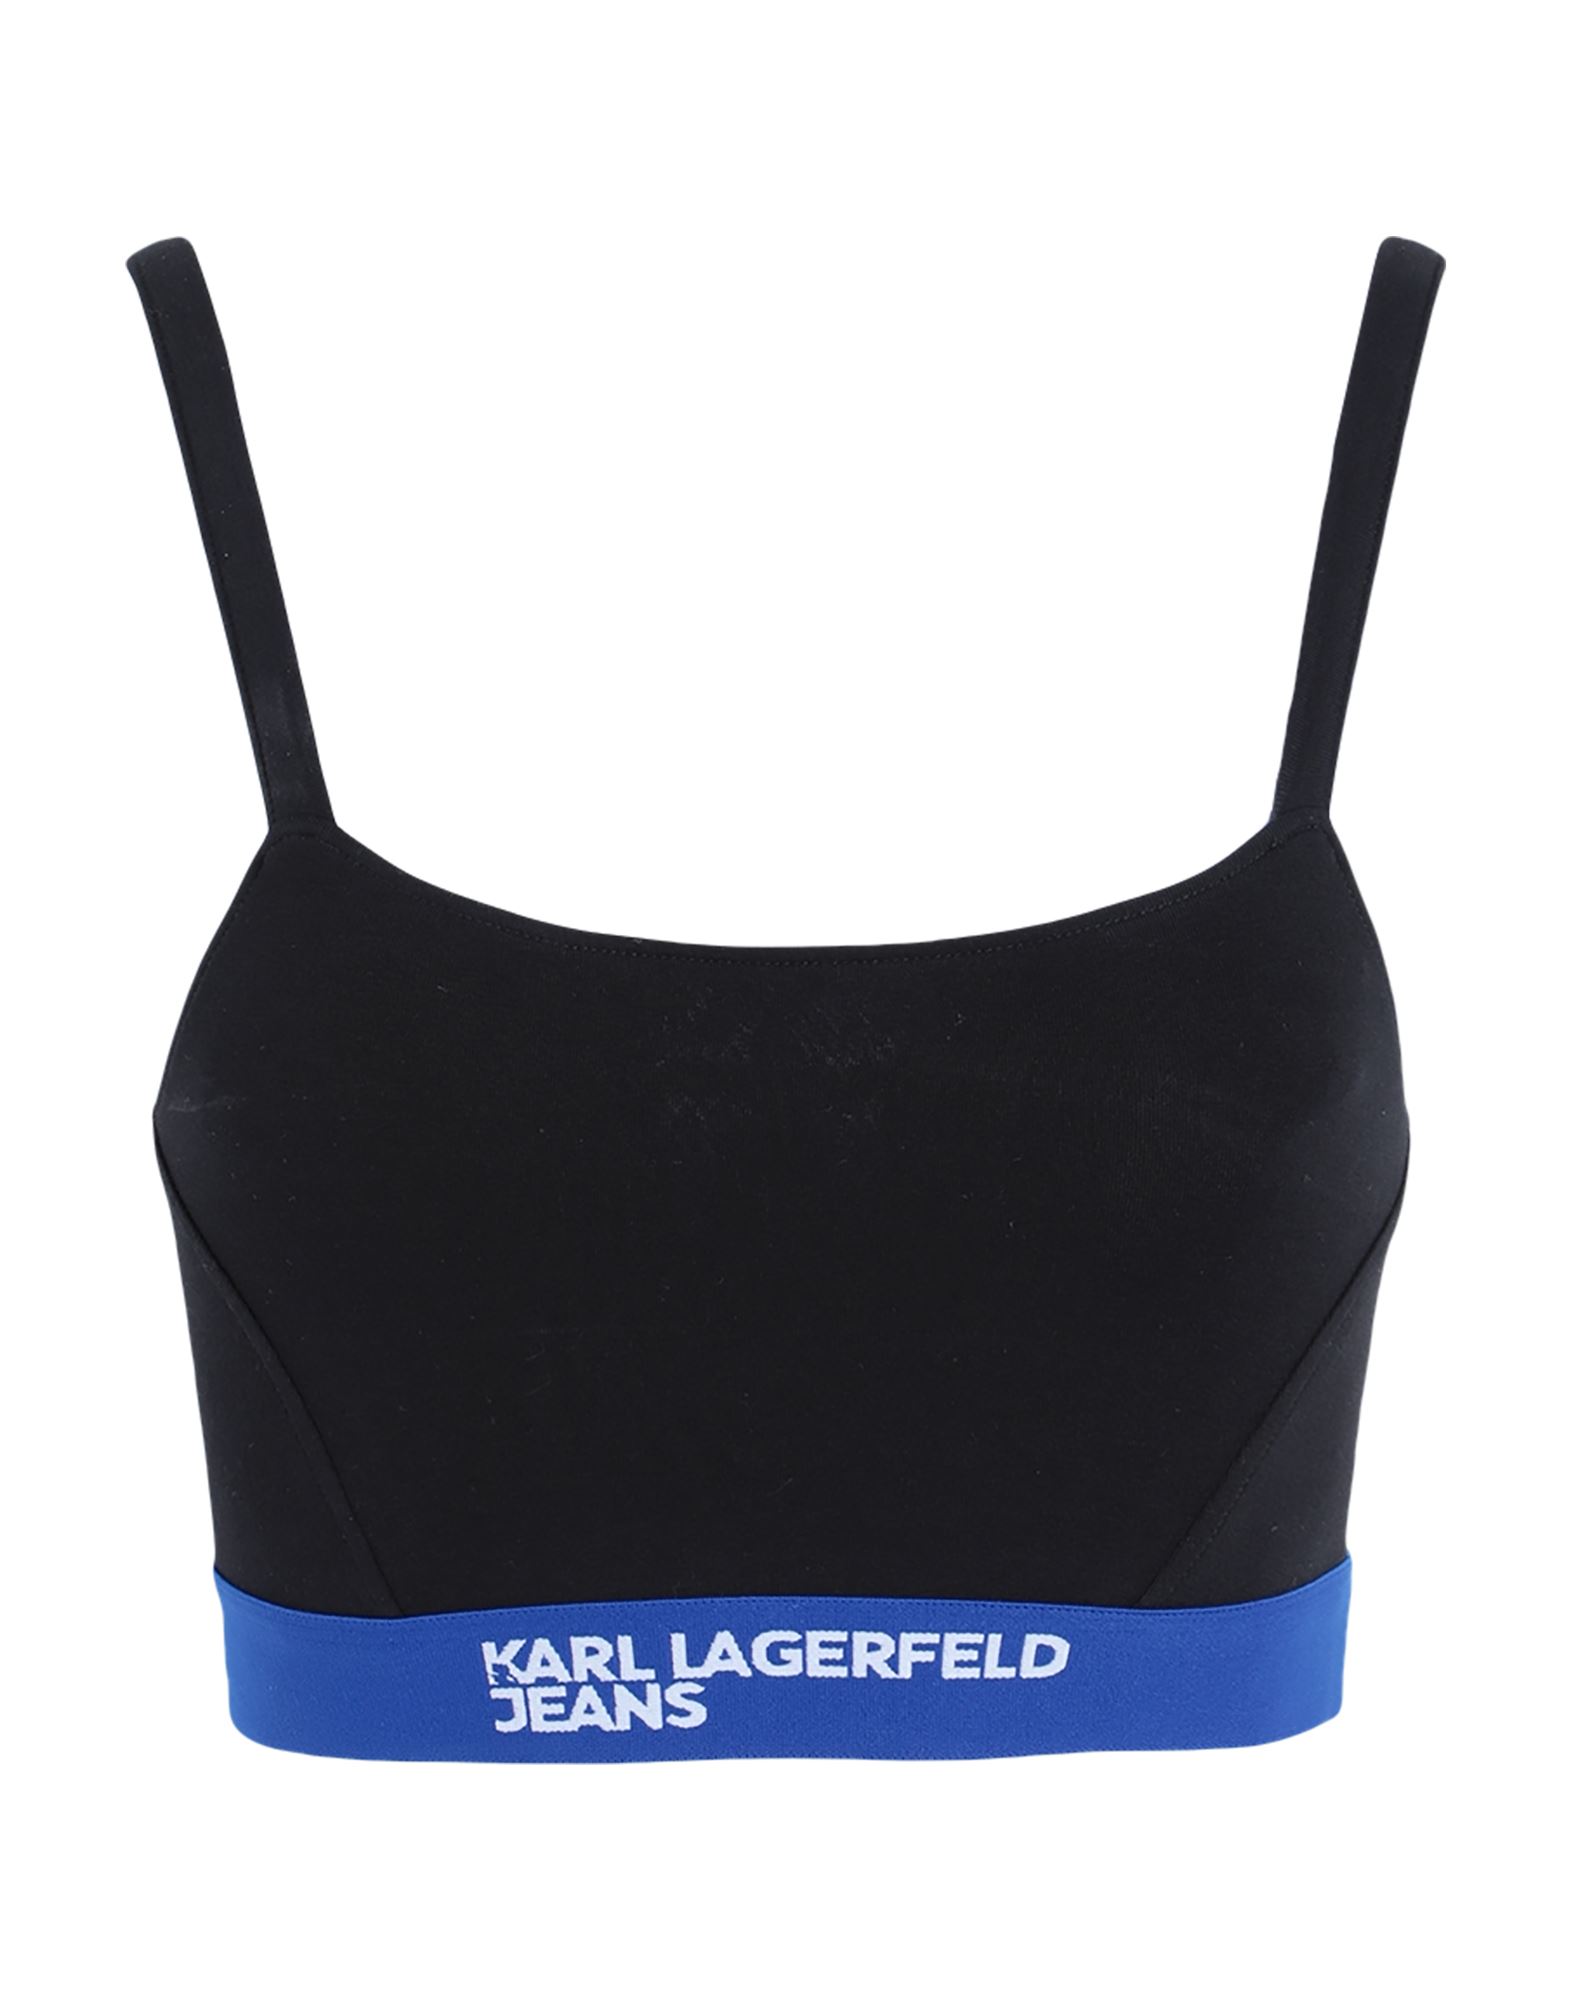 Karl Lagerfeld Jeans Jersey-knit Bustier Top In Black